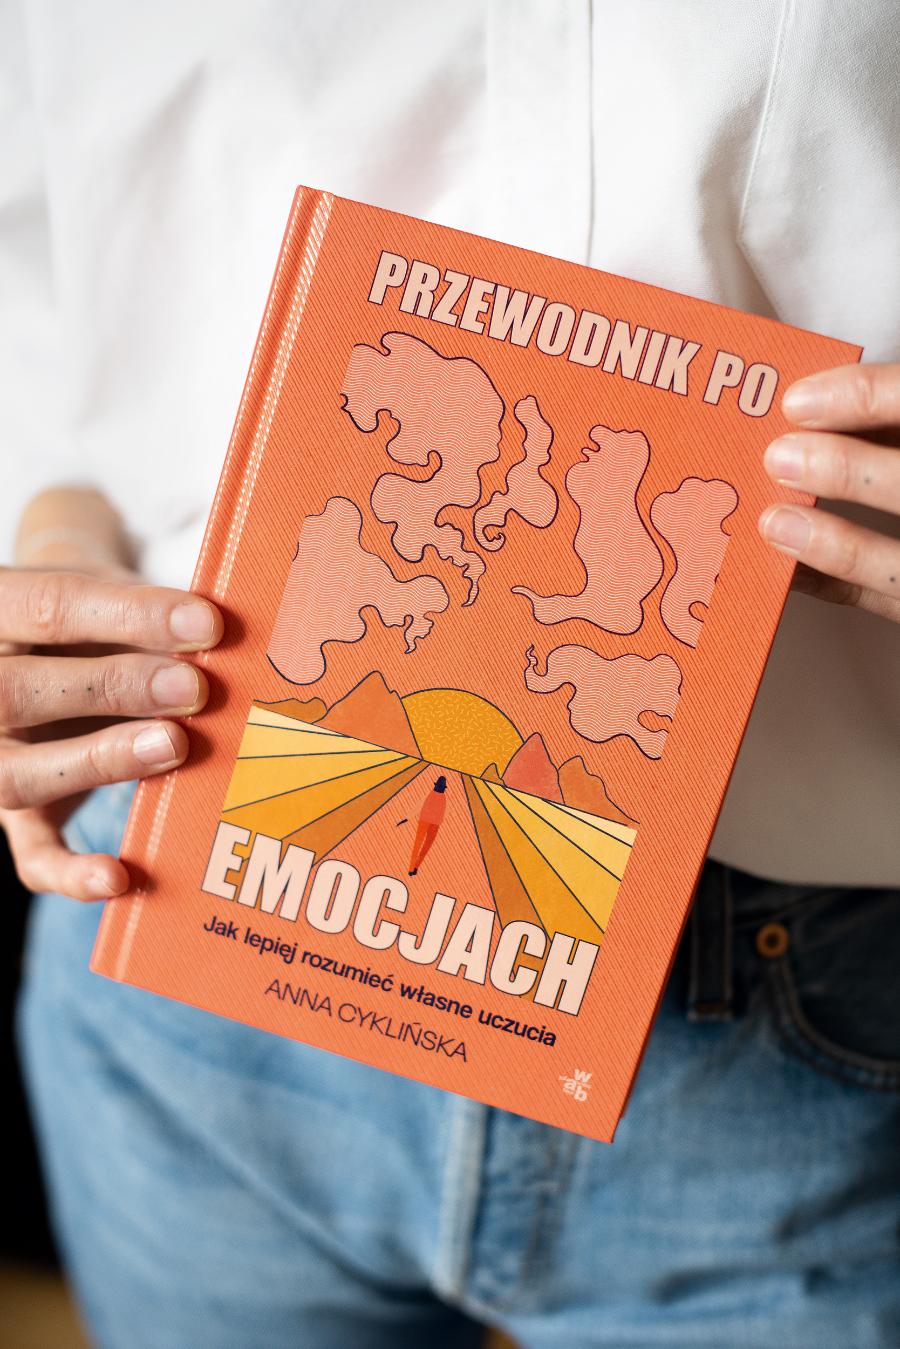 Anna Cyklińska, psychoterapeutka jest autorką bestsellera „Przewodnik po emocjach”. (Fot. Aga Bilska)